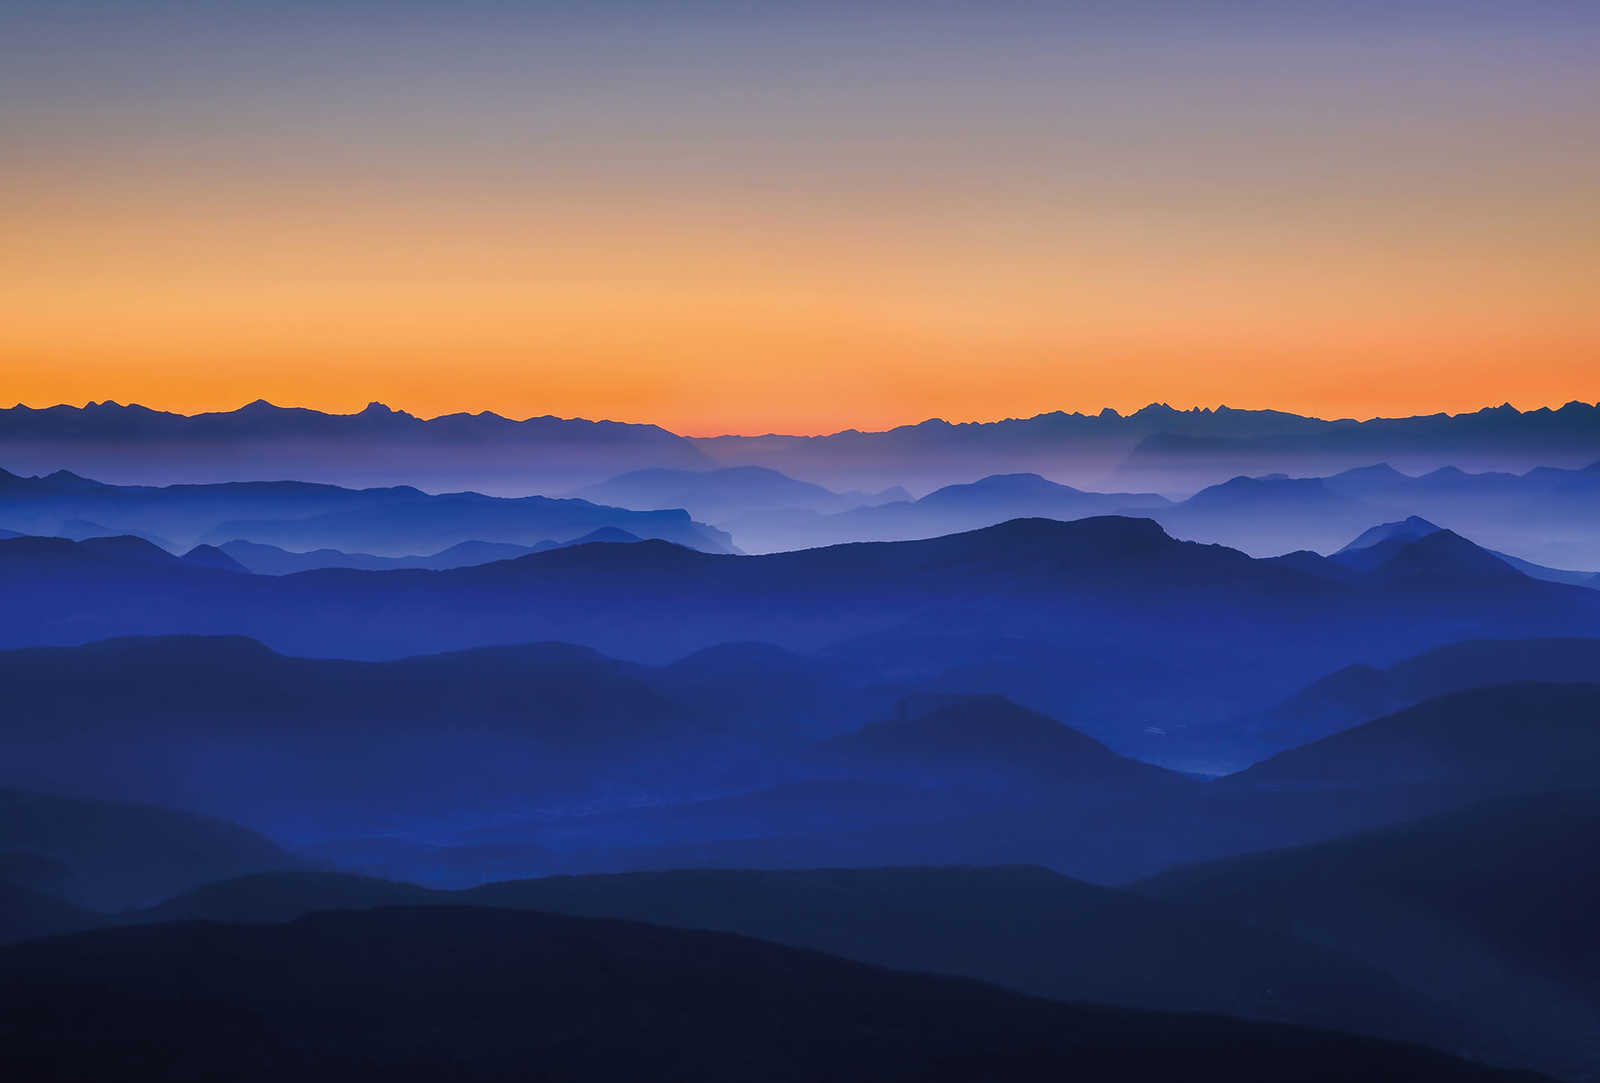 Bergen bij zonsopgang Behang - Blauw, Oranje, Geel
